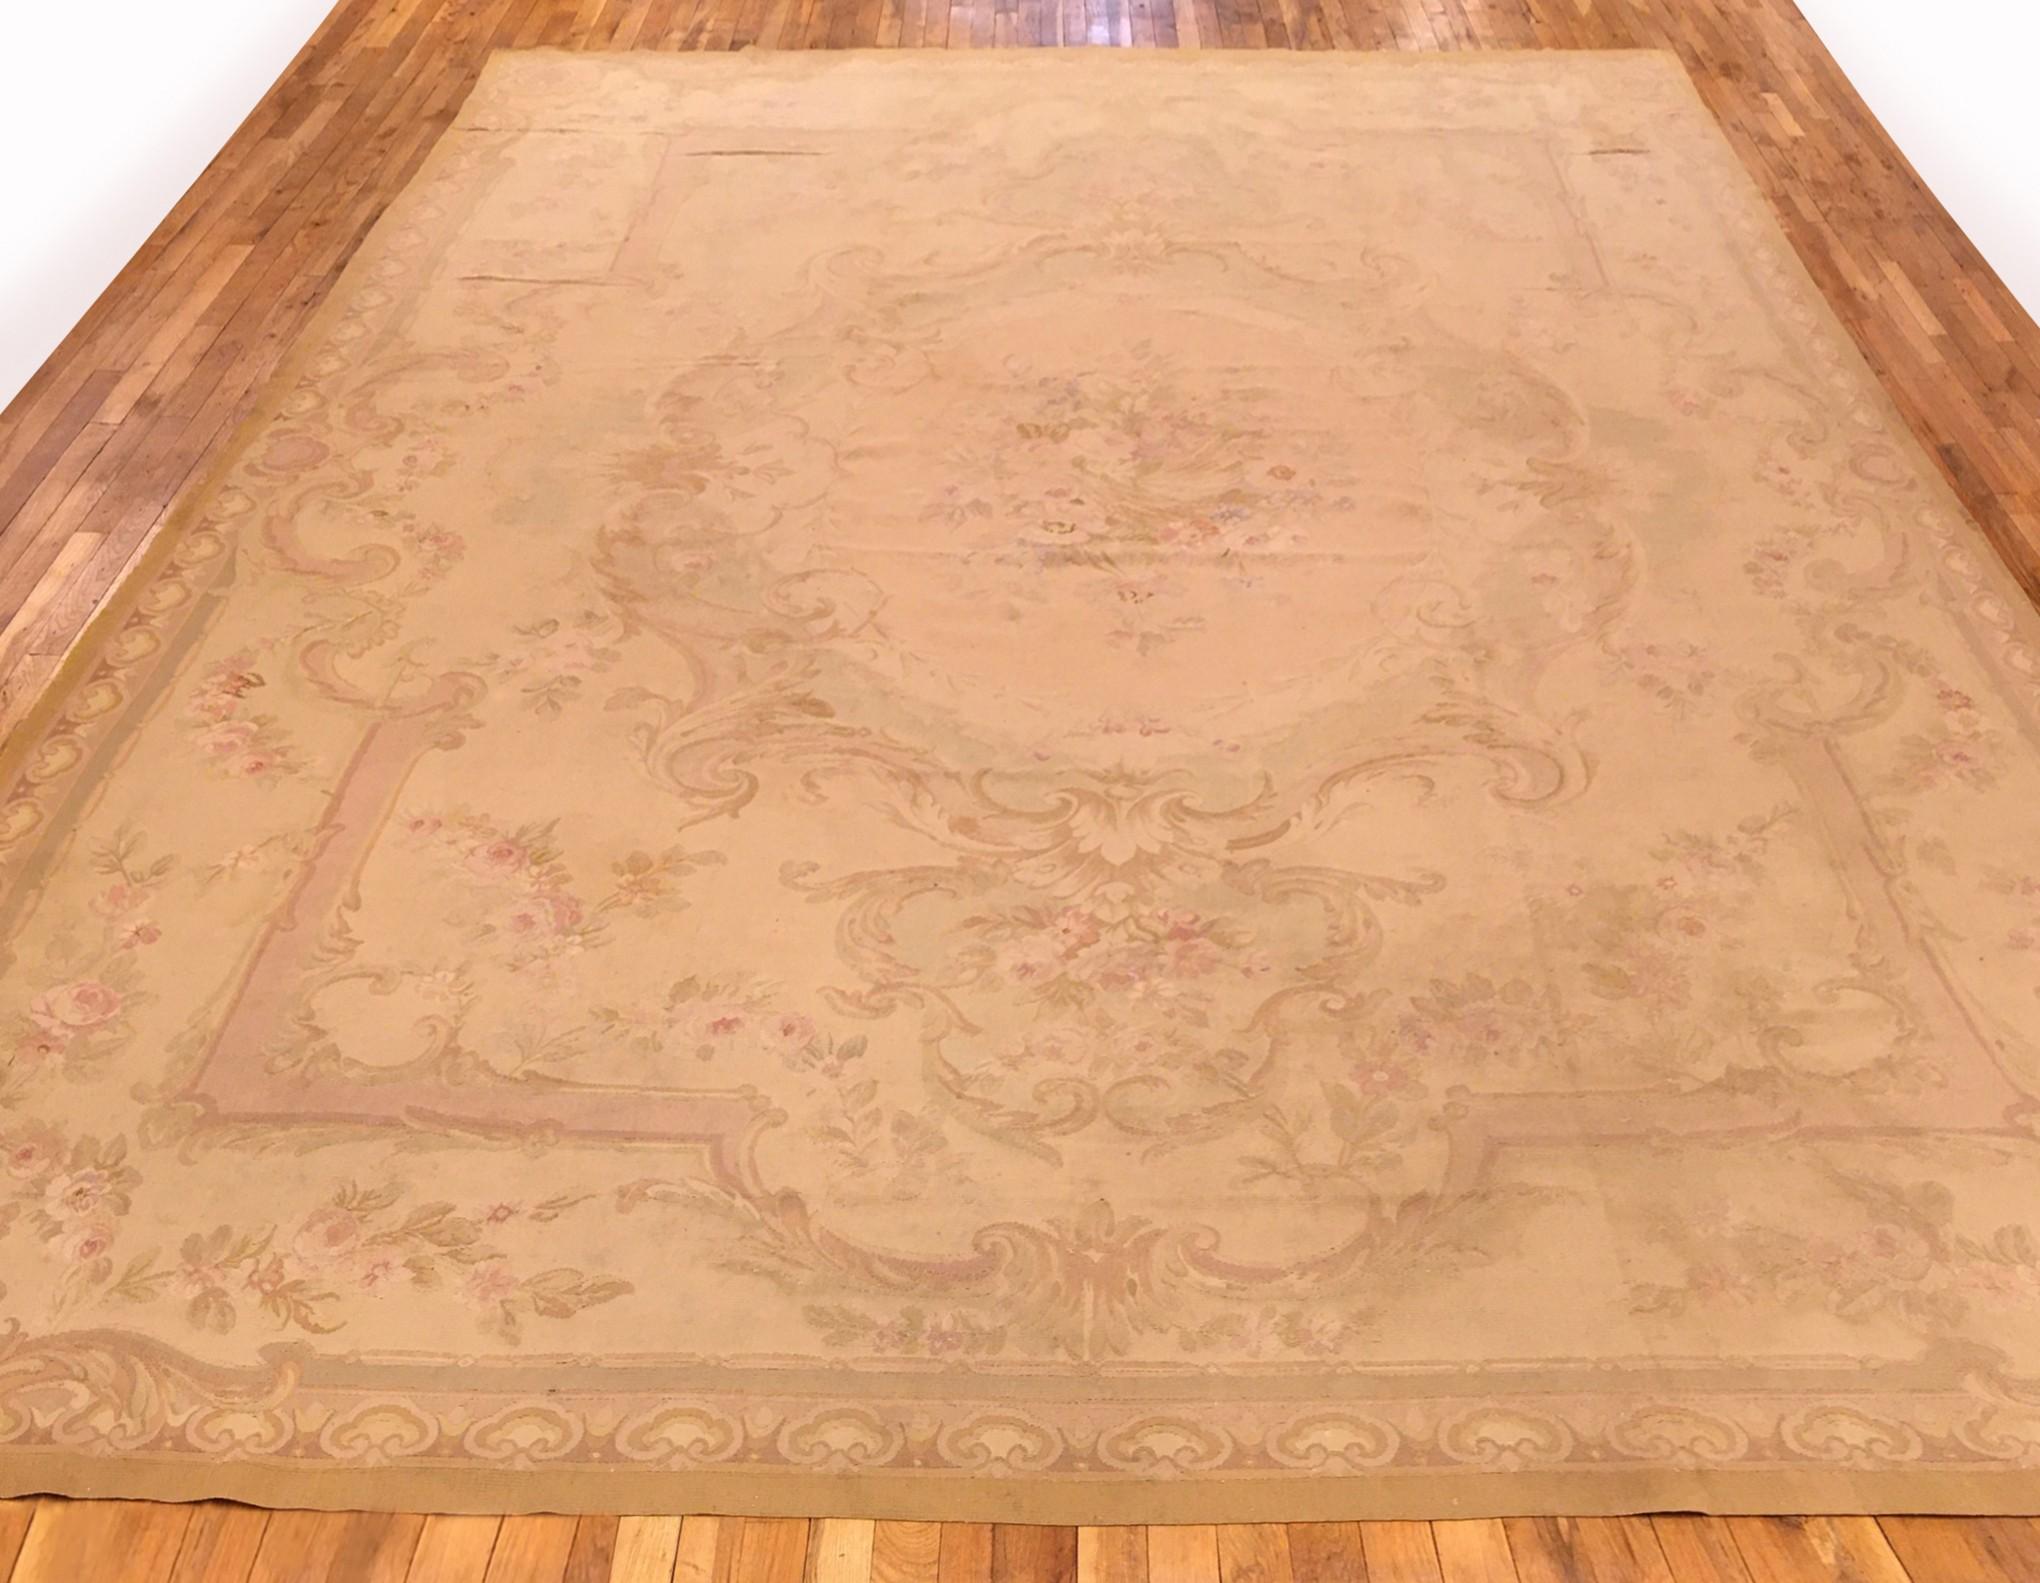 Un ancien tapis français d'Aubusson, de dimensions 14'0 x 9'10, vers 1890. Ce beau tapis en laine tissé à plat de l'époque Louis Philippe présente un élégant médaillon et une bordure extérieure délicatement travaillée, avec des couleurs ivoires